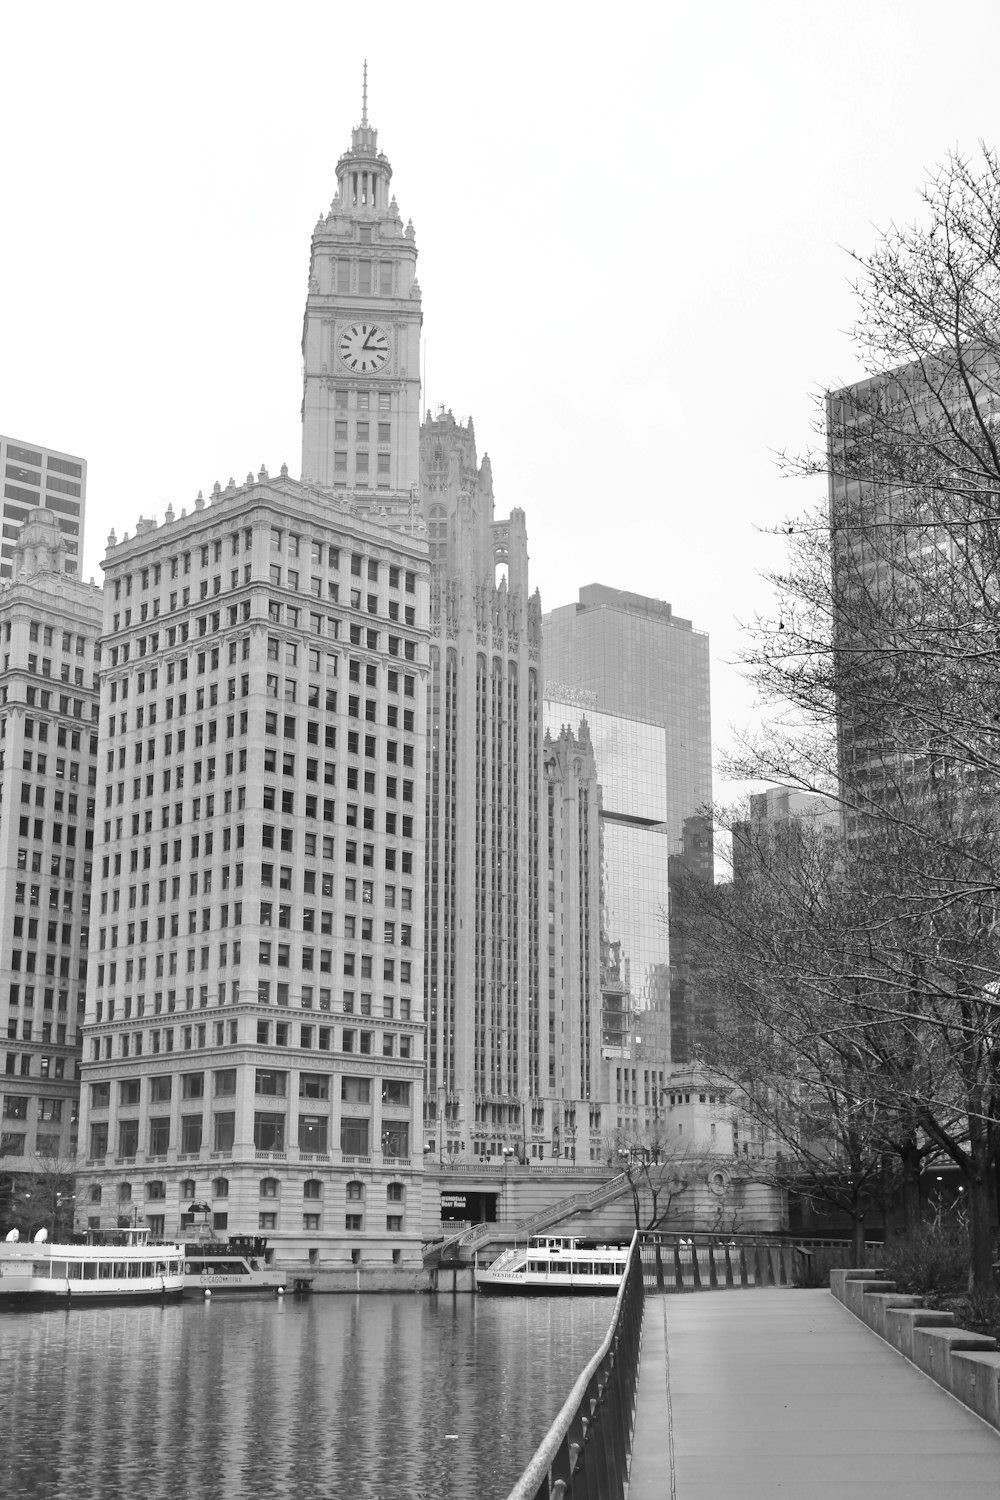 Photo en niveaux de gris d’un immeuble de grande hauteur